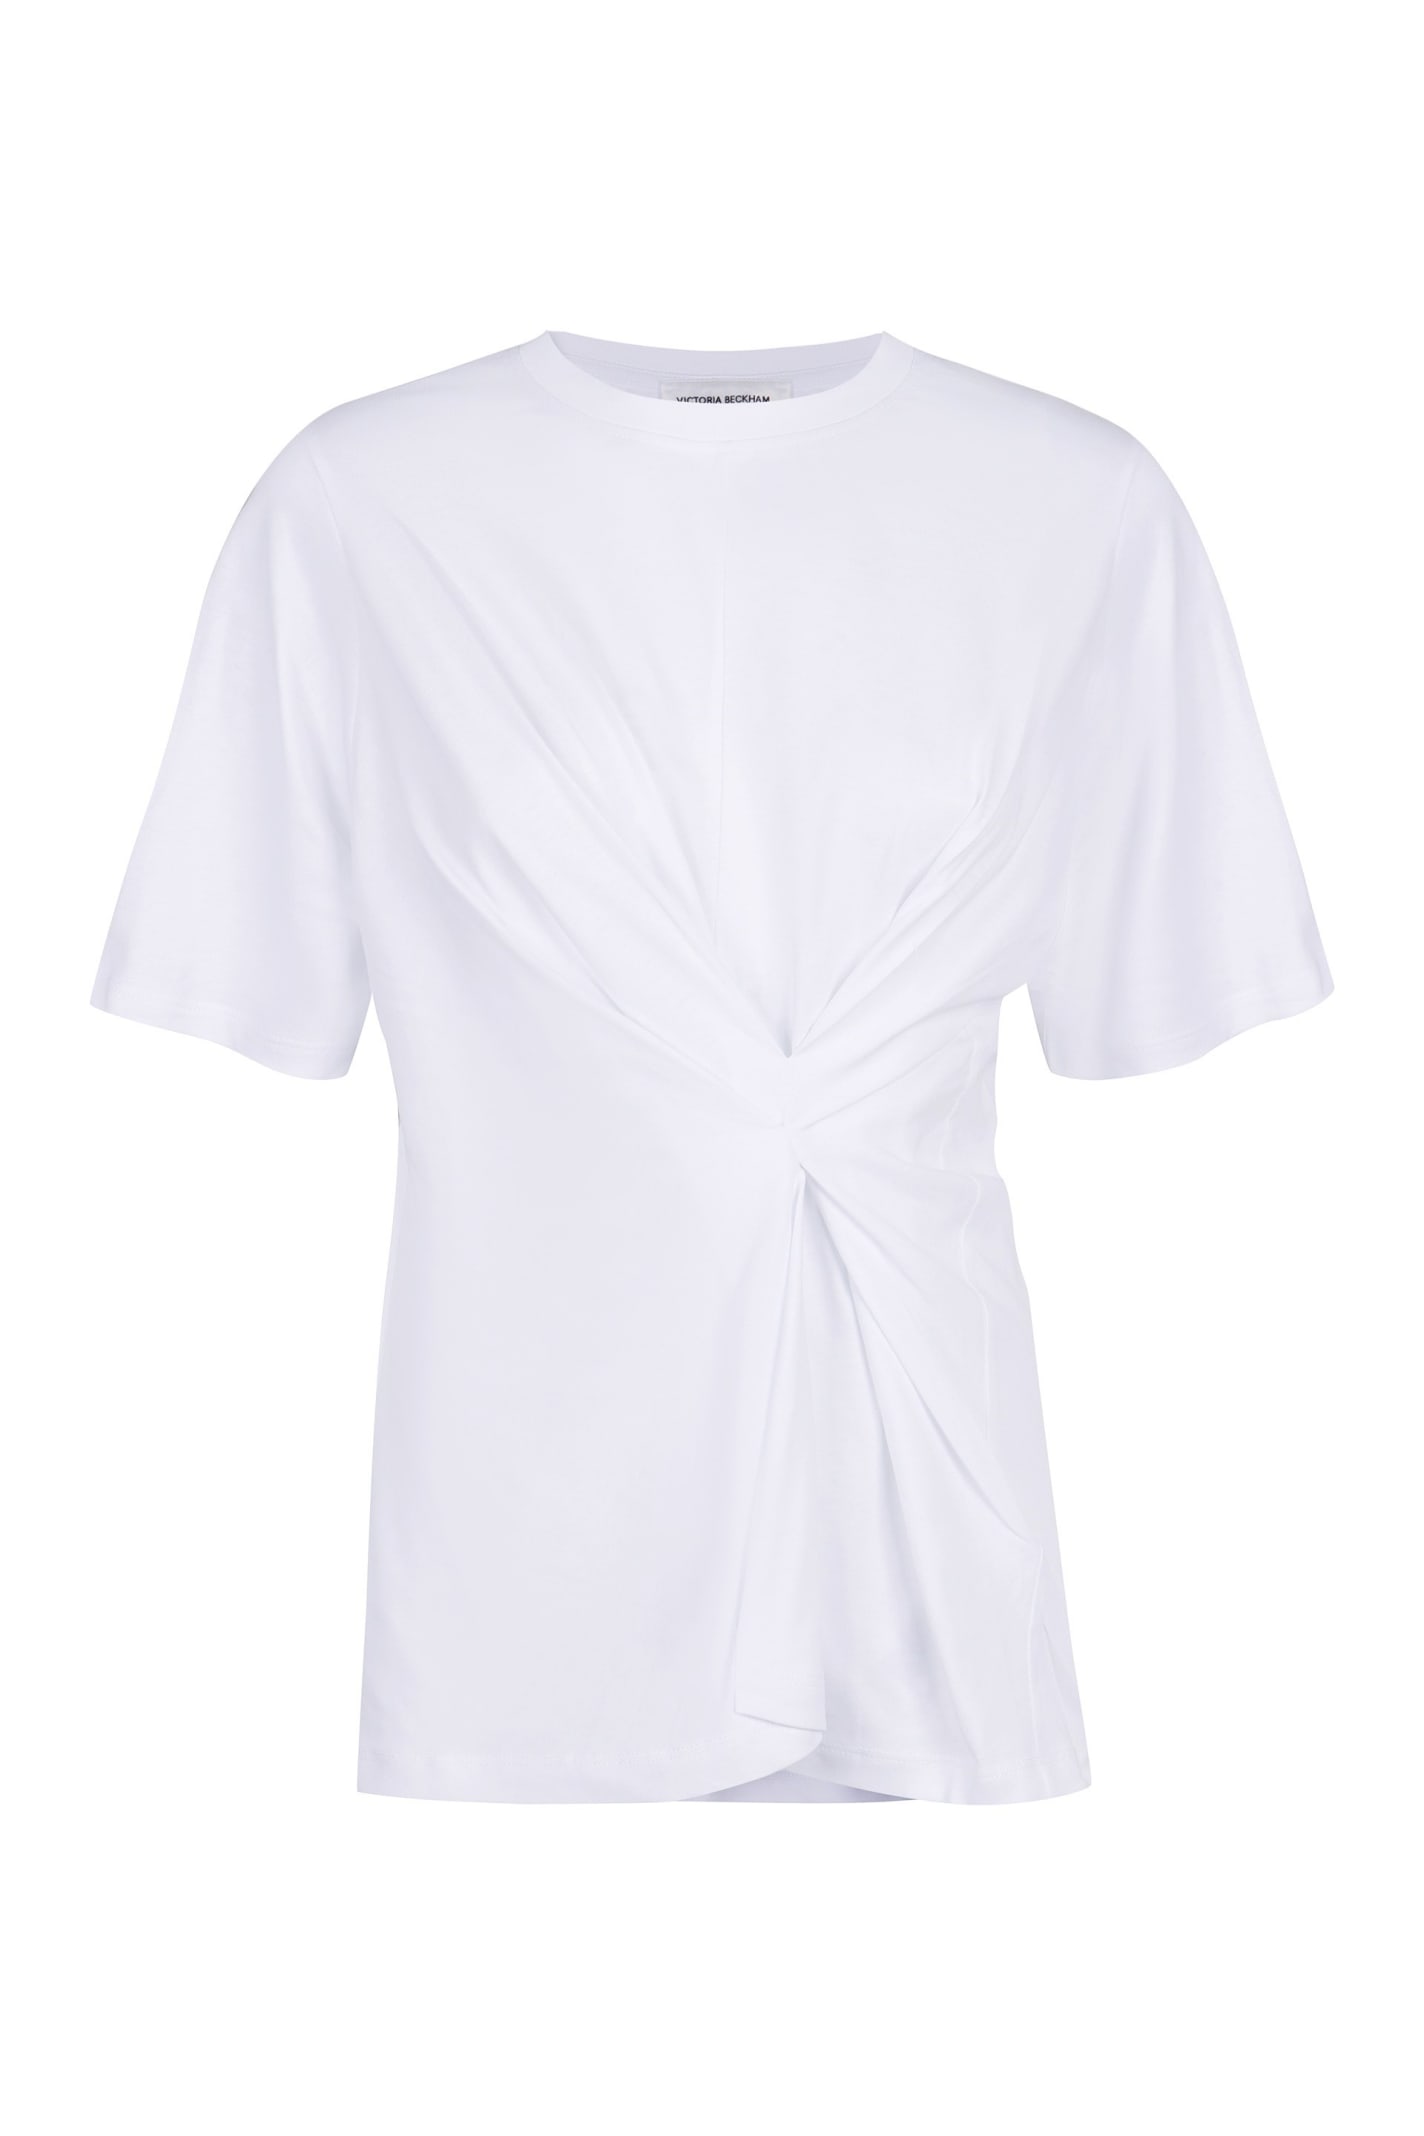 Victoria Beckham Cotton T-shirt In White